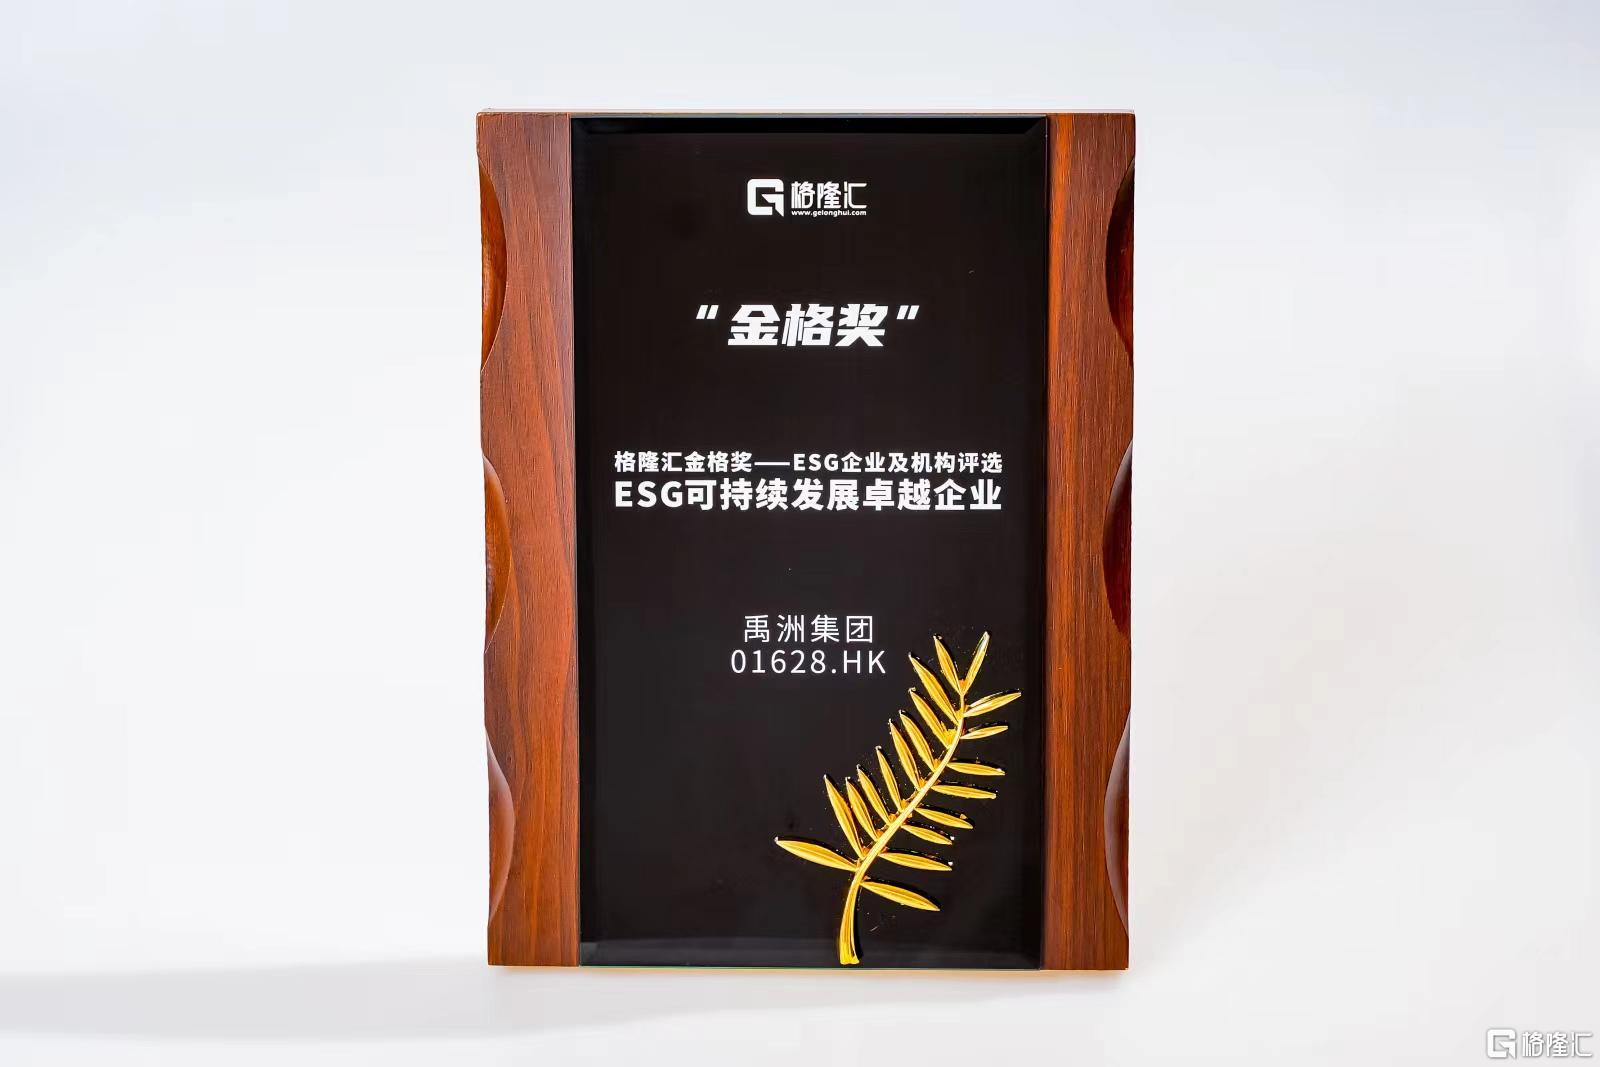 禹洲集团（01628.HK）践行绿色可持续发展理念 荣获“ESG可持续发展卓越企业”奖